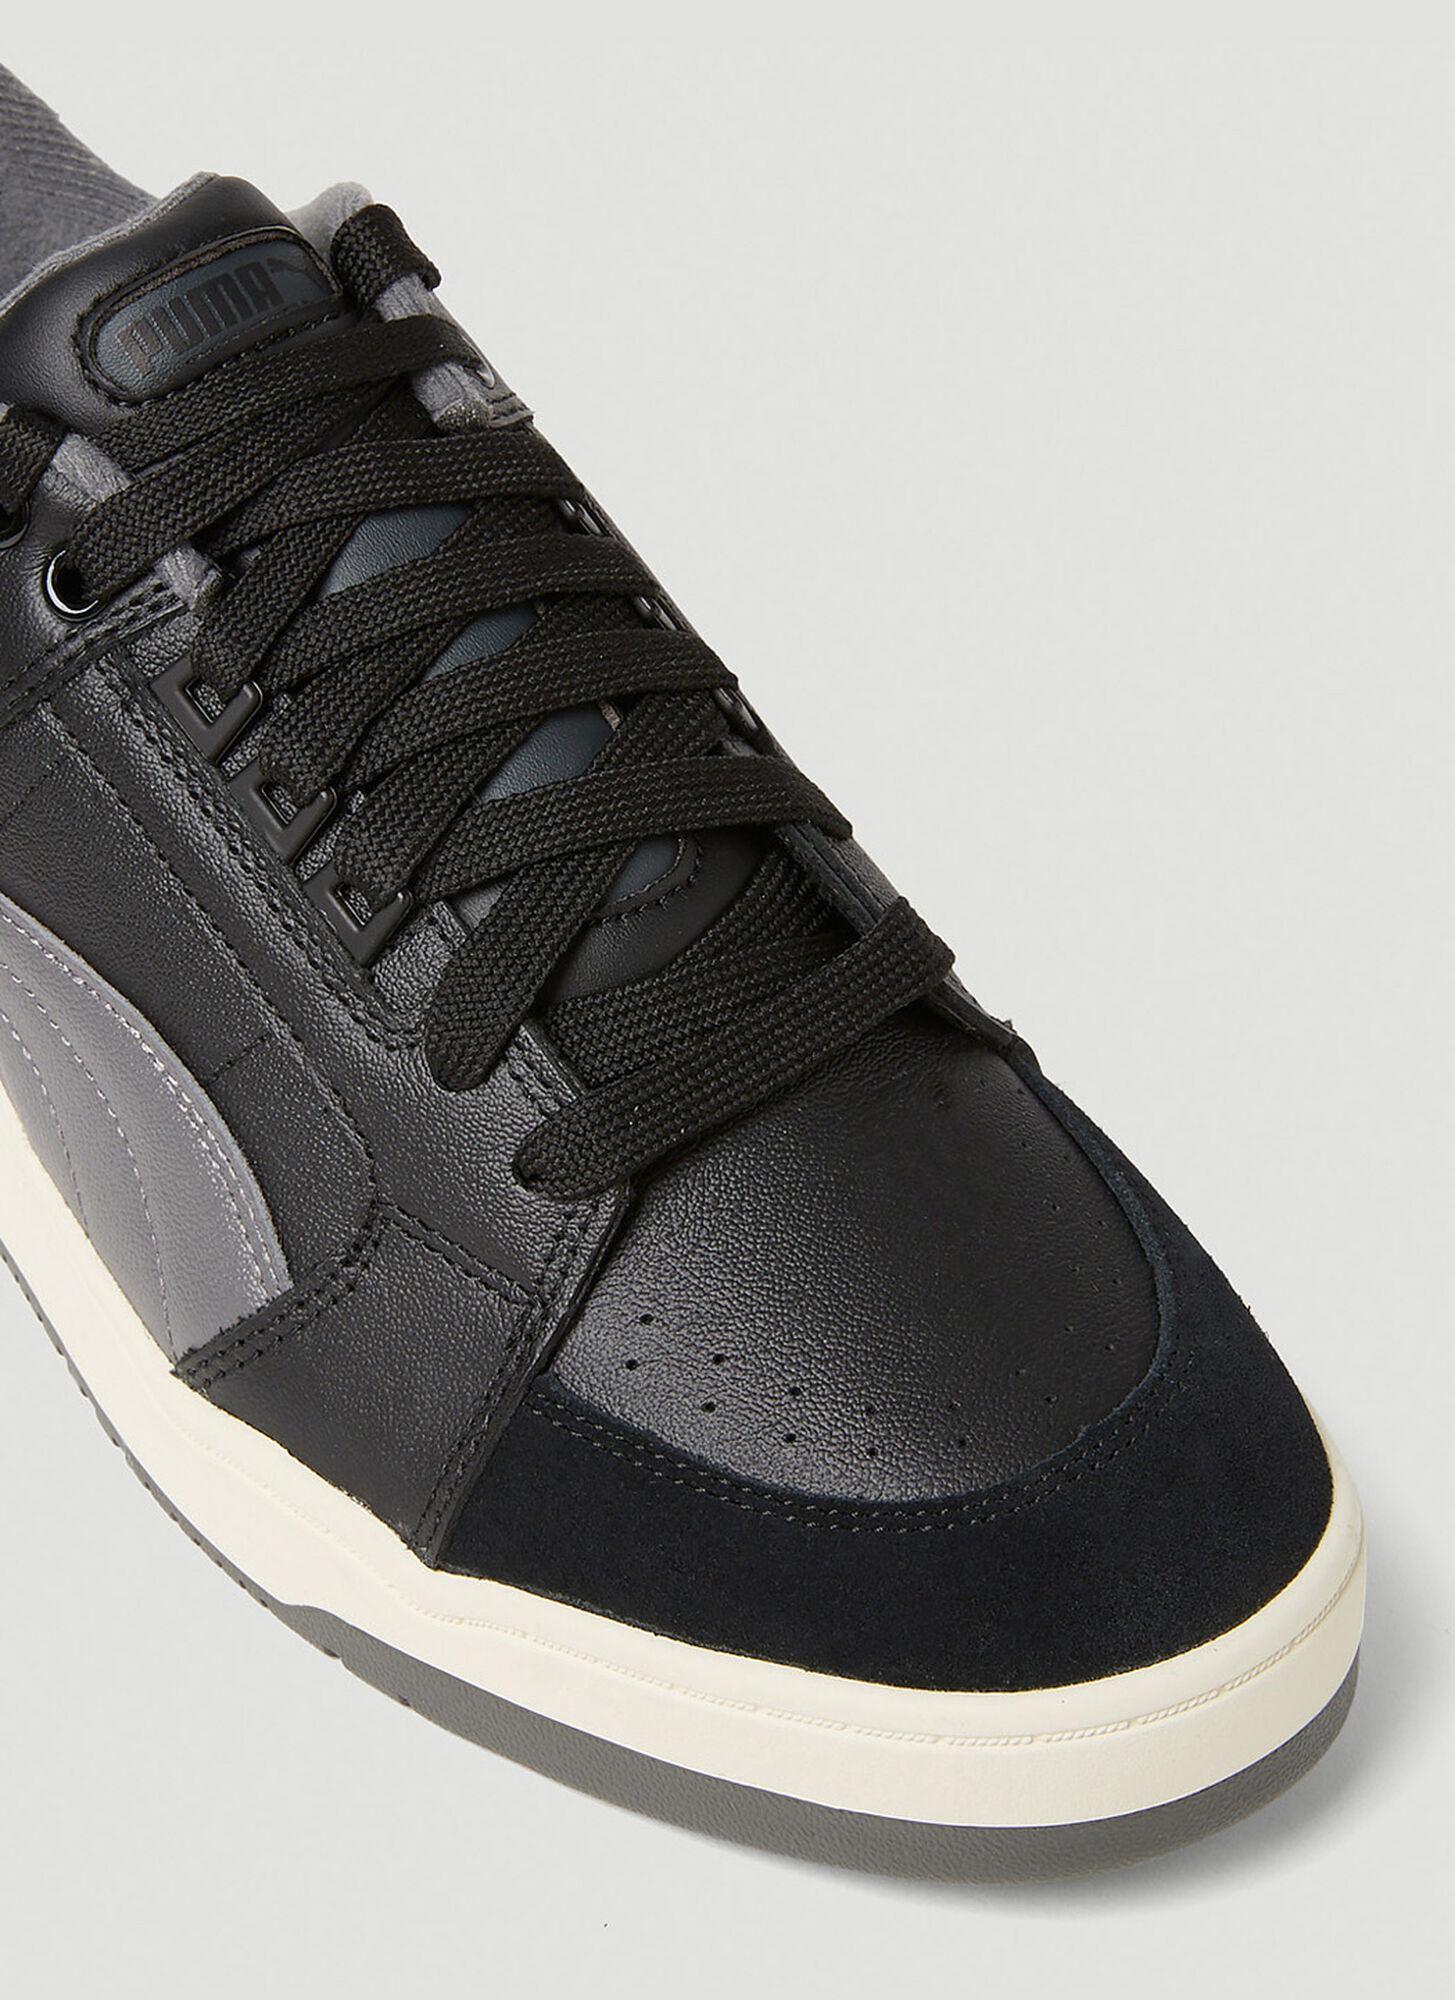 PUMA Slipstream Lo Retro Sneakers in Black for Men | Lyst